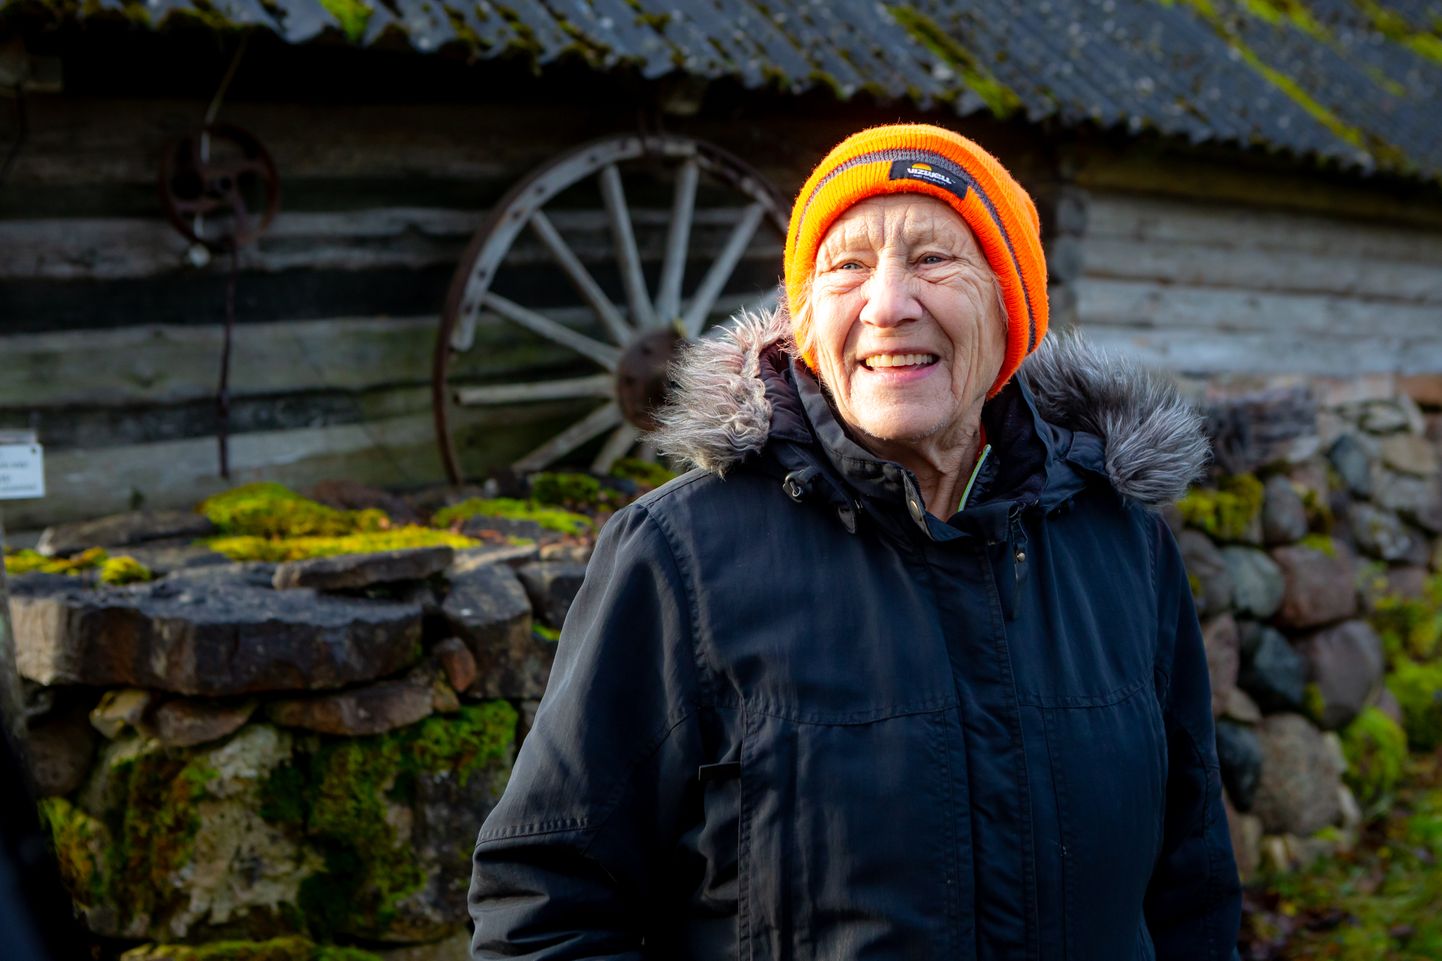 KÄSITÖÖGA SÖGEDAKS: Üle 40 aasta tagasi Sögedate külla tulnud Maie Schmuul soovitab Muhusse sulandumiseks omandada kohaliku käsitöö saladused.